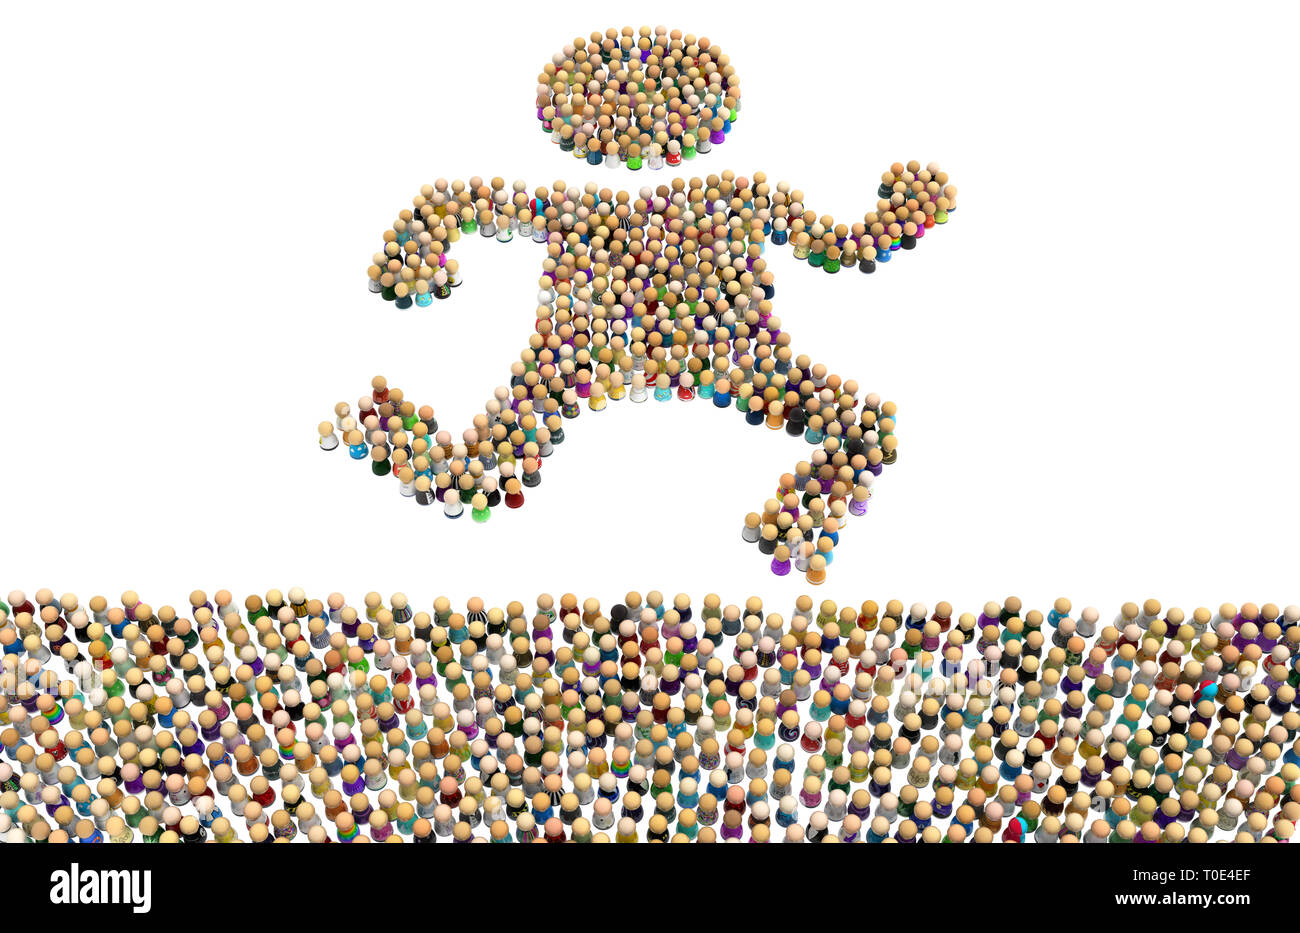 Foule de petites figures symboliques faisant grande forme personne jogging, 3d illustration, horizontal, isolé, over white Banque D'Images